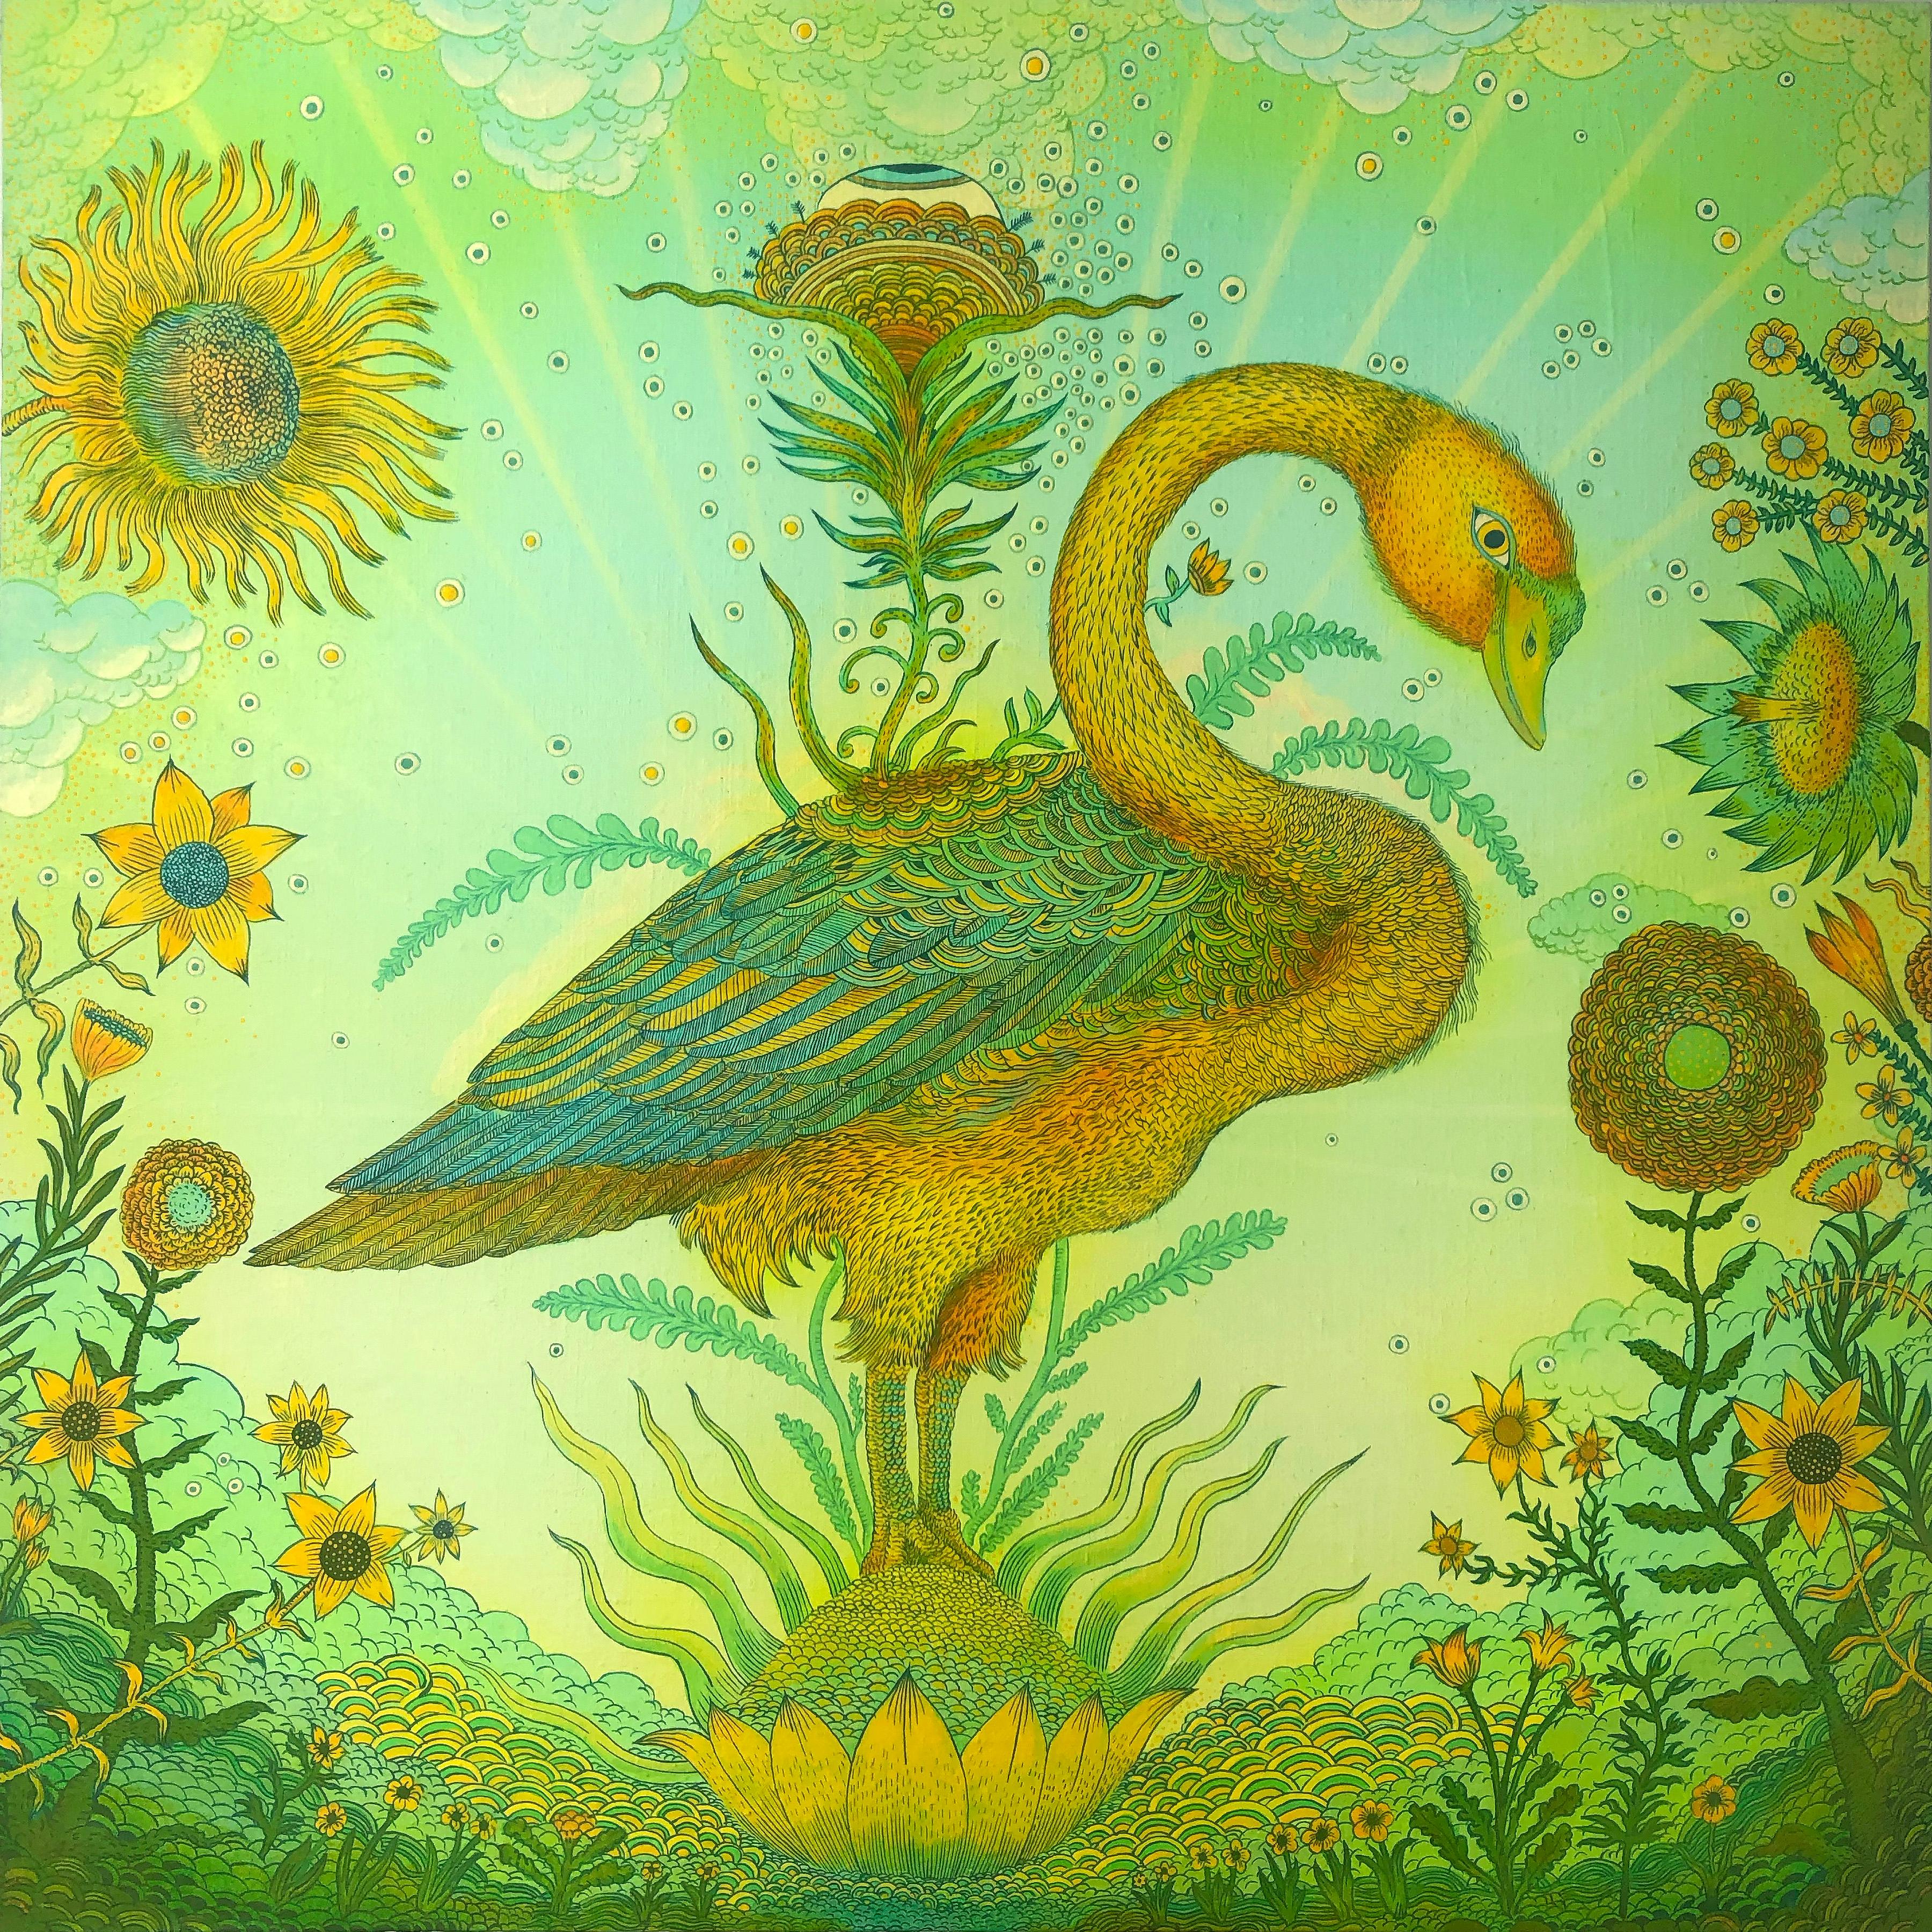 Golden Green Swan Event, Bird, Sunflowers, Clouds, Eye, Botanical Landscape - Painting by Peter Hamlin